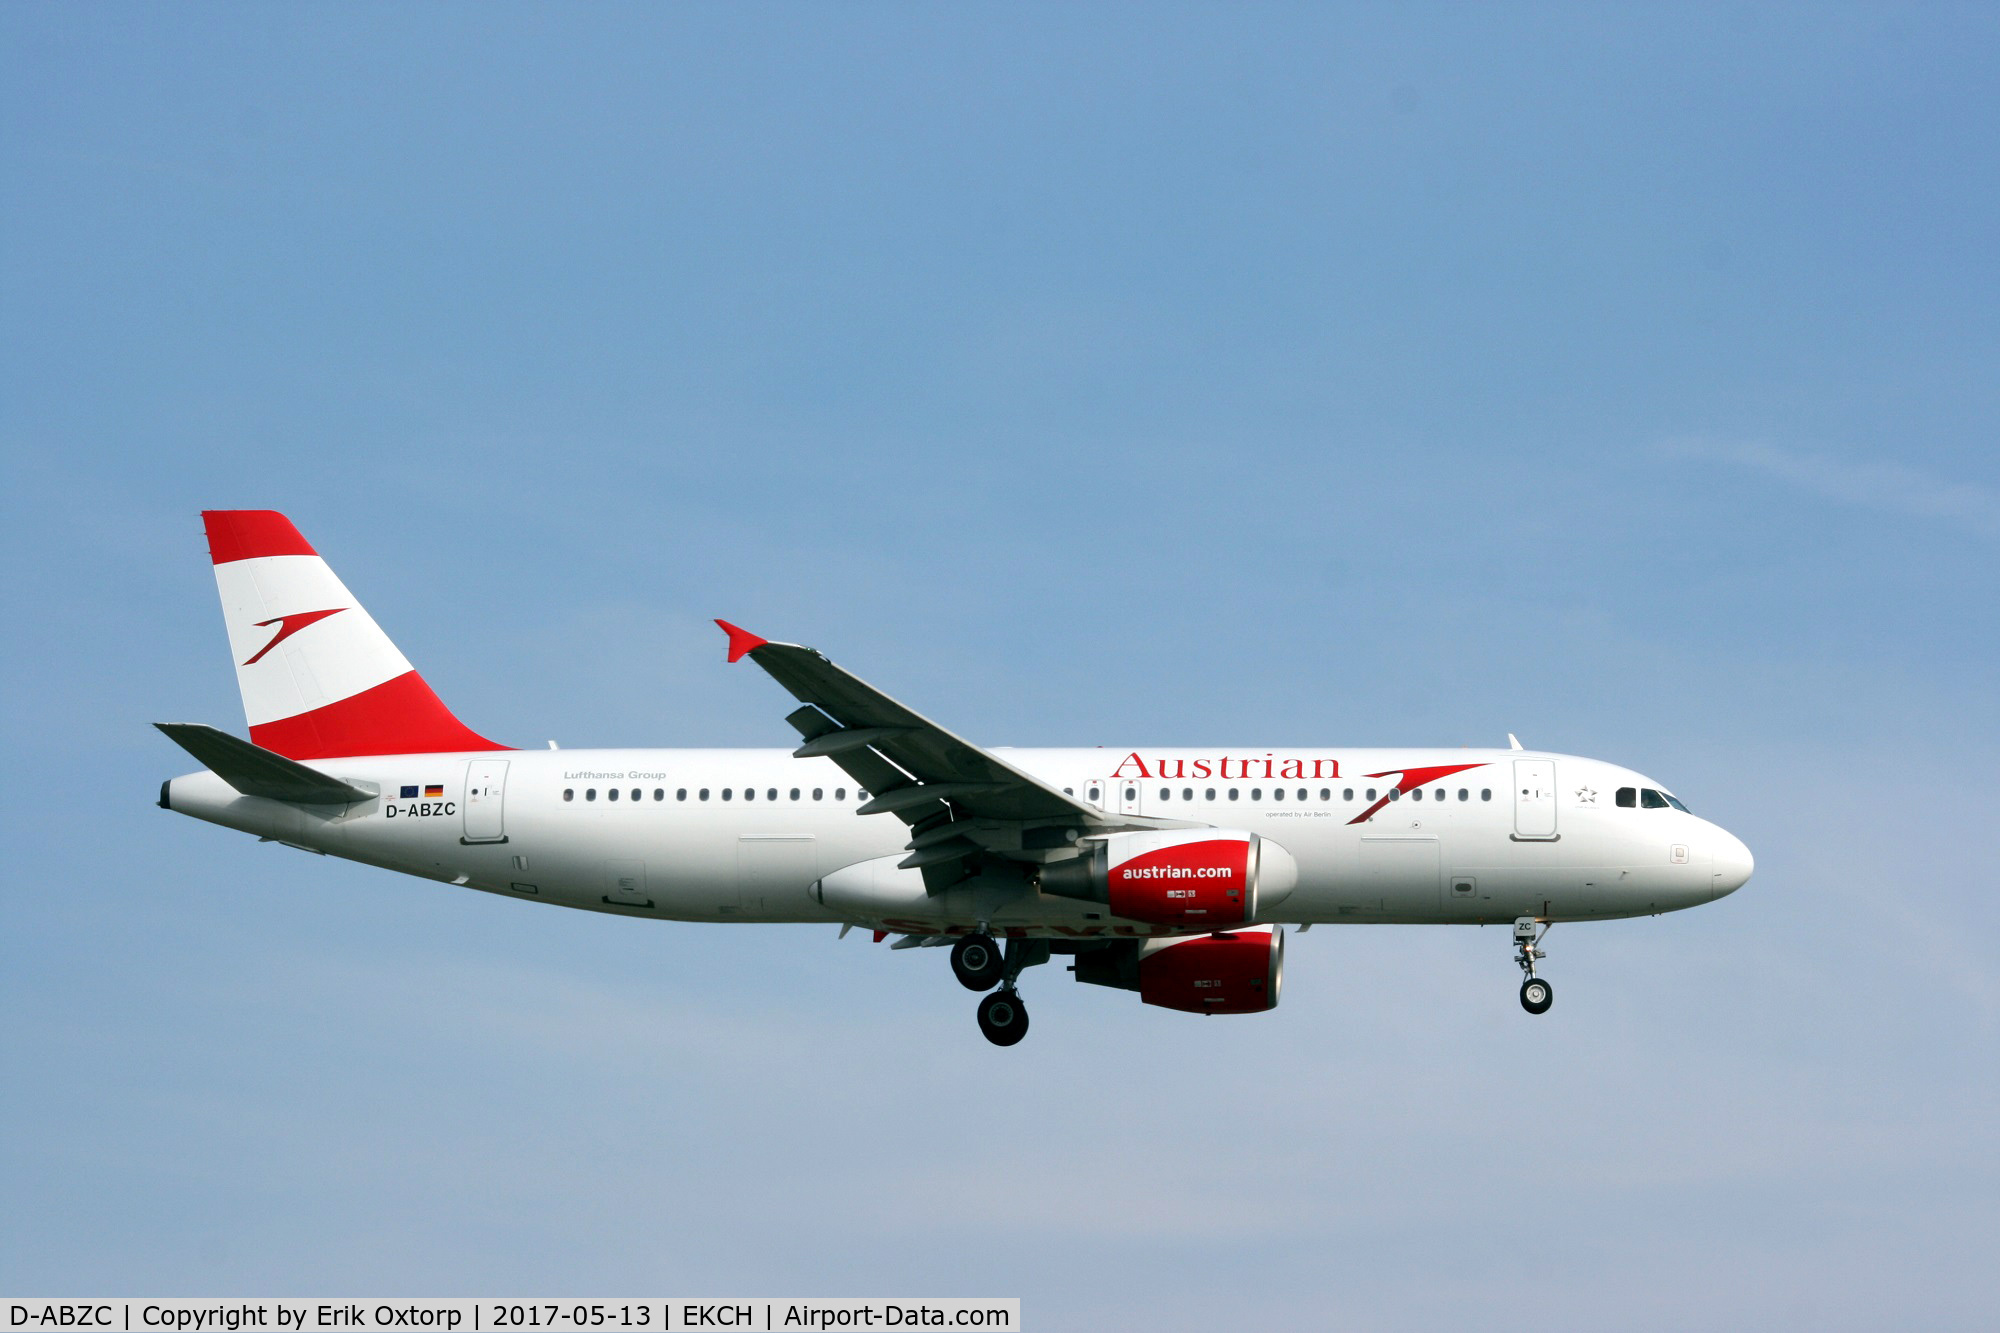 D-ABZC, 2008 Airbus A320-216 C/N 3502, D-ABZC landing rw 22L. Now in Austrian c/s.